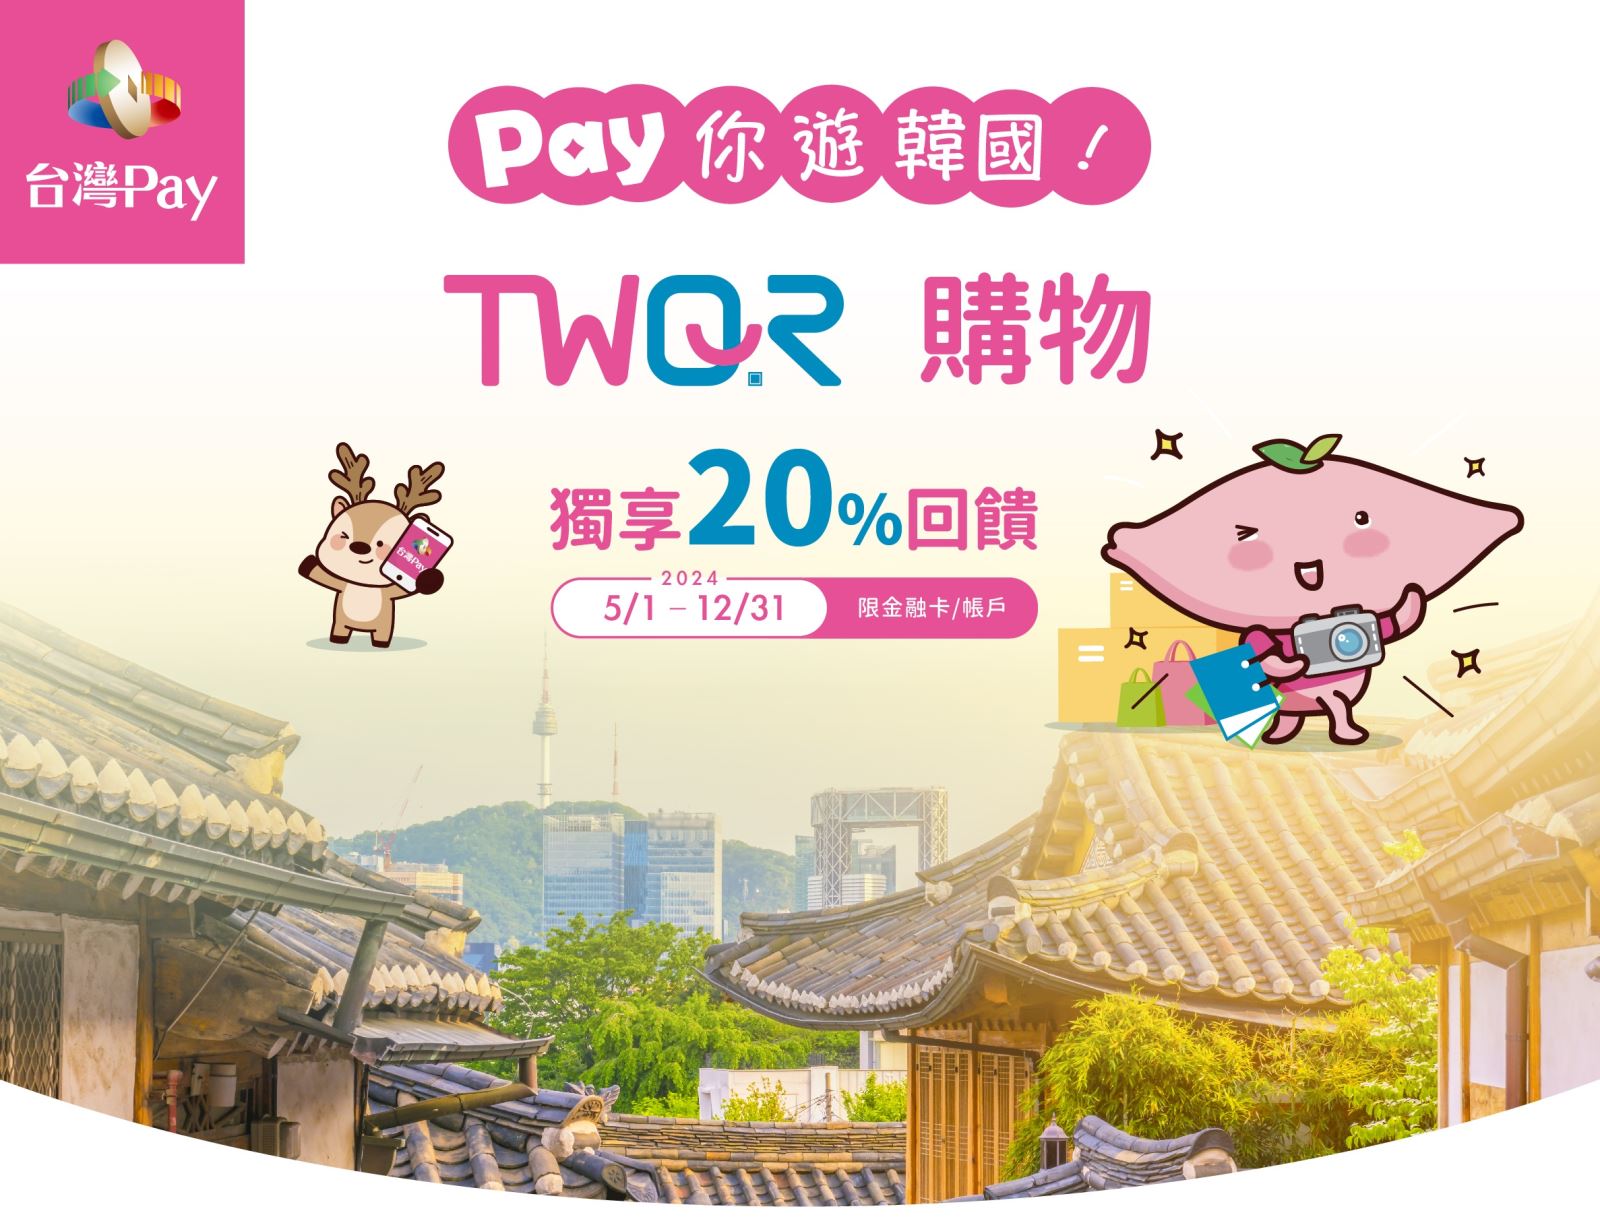 Pay你遊韓國TWQR購物獨享20%回饋